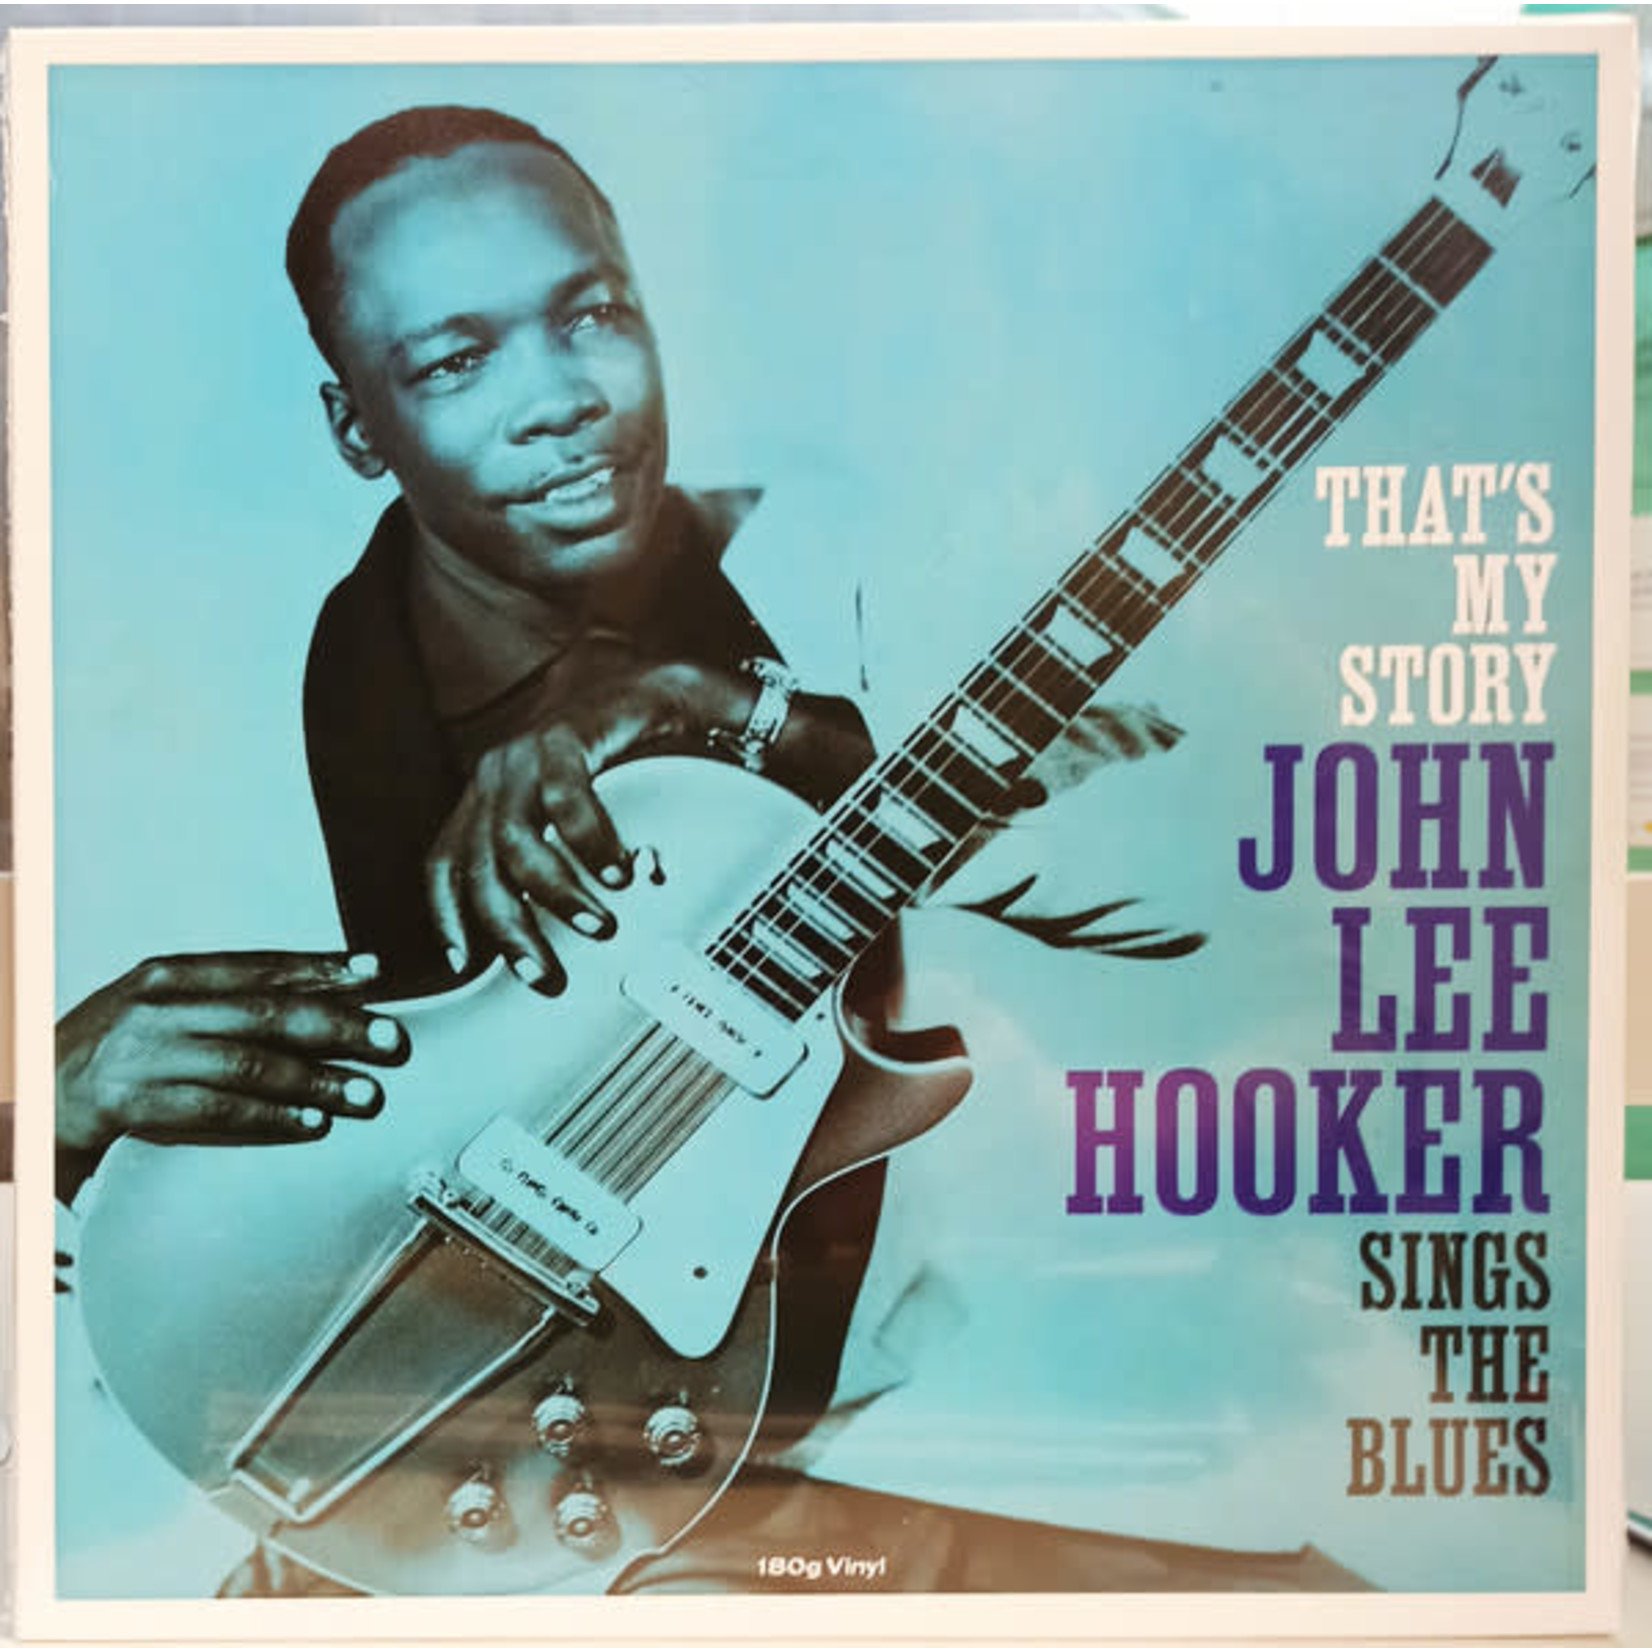 [New] John Lee Hooker - That's My Story - John Lee Hooker Sings the Blues